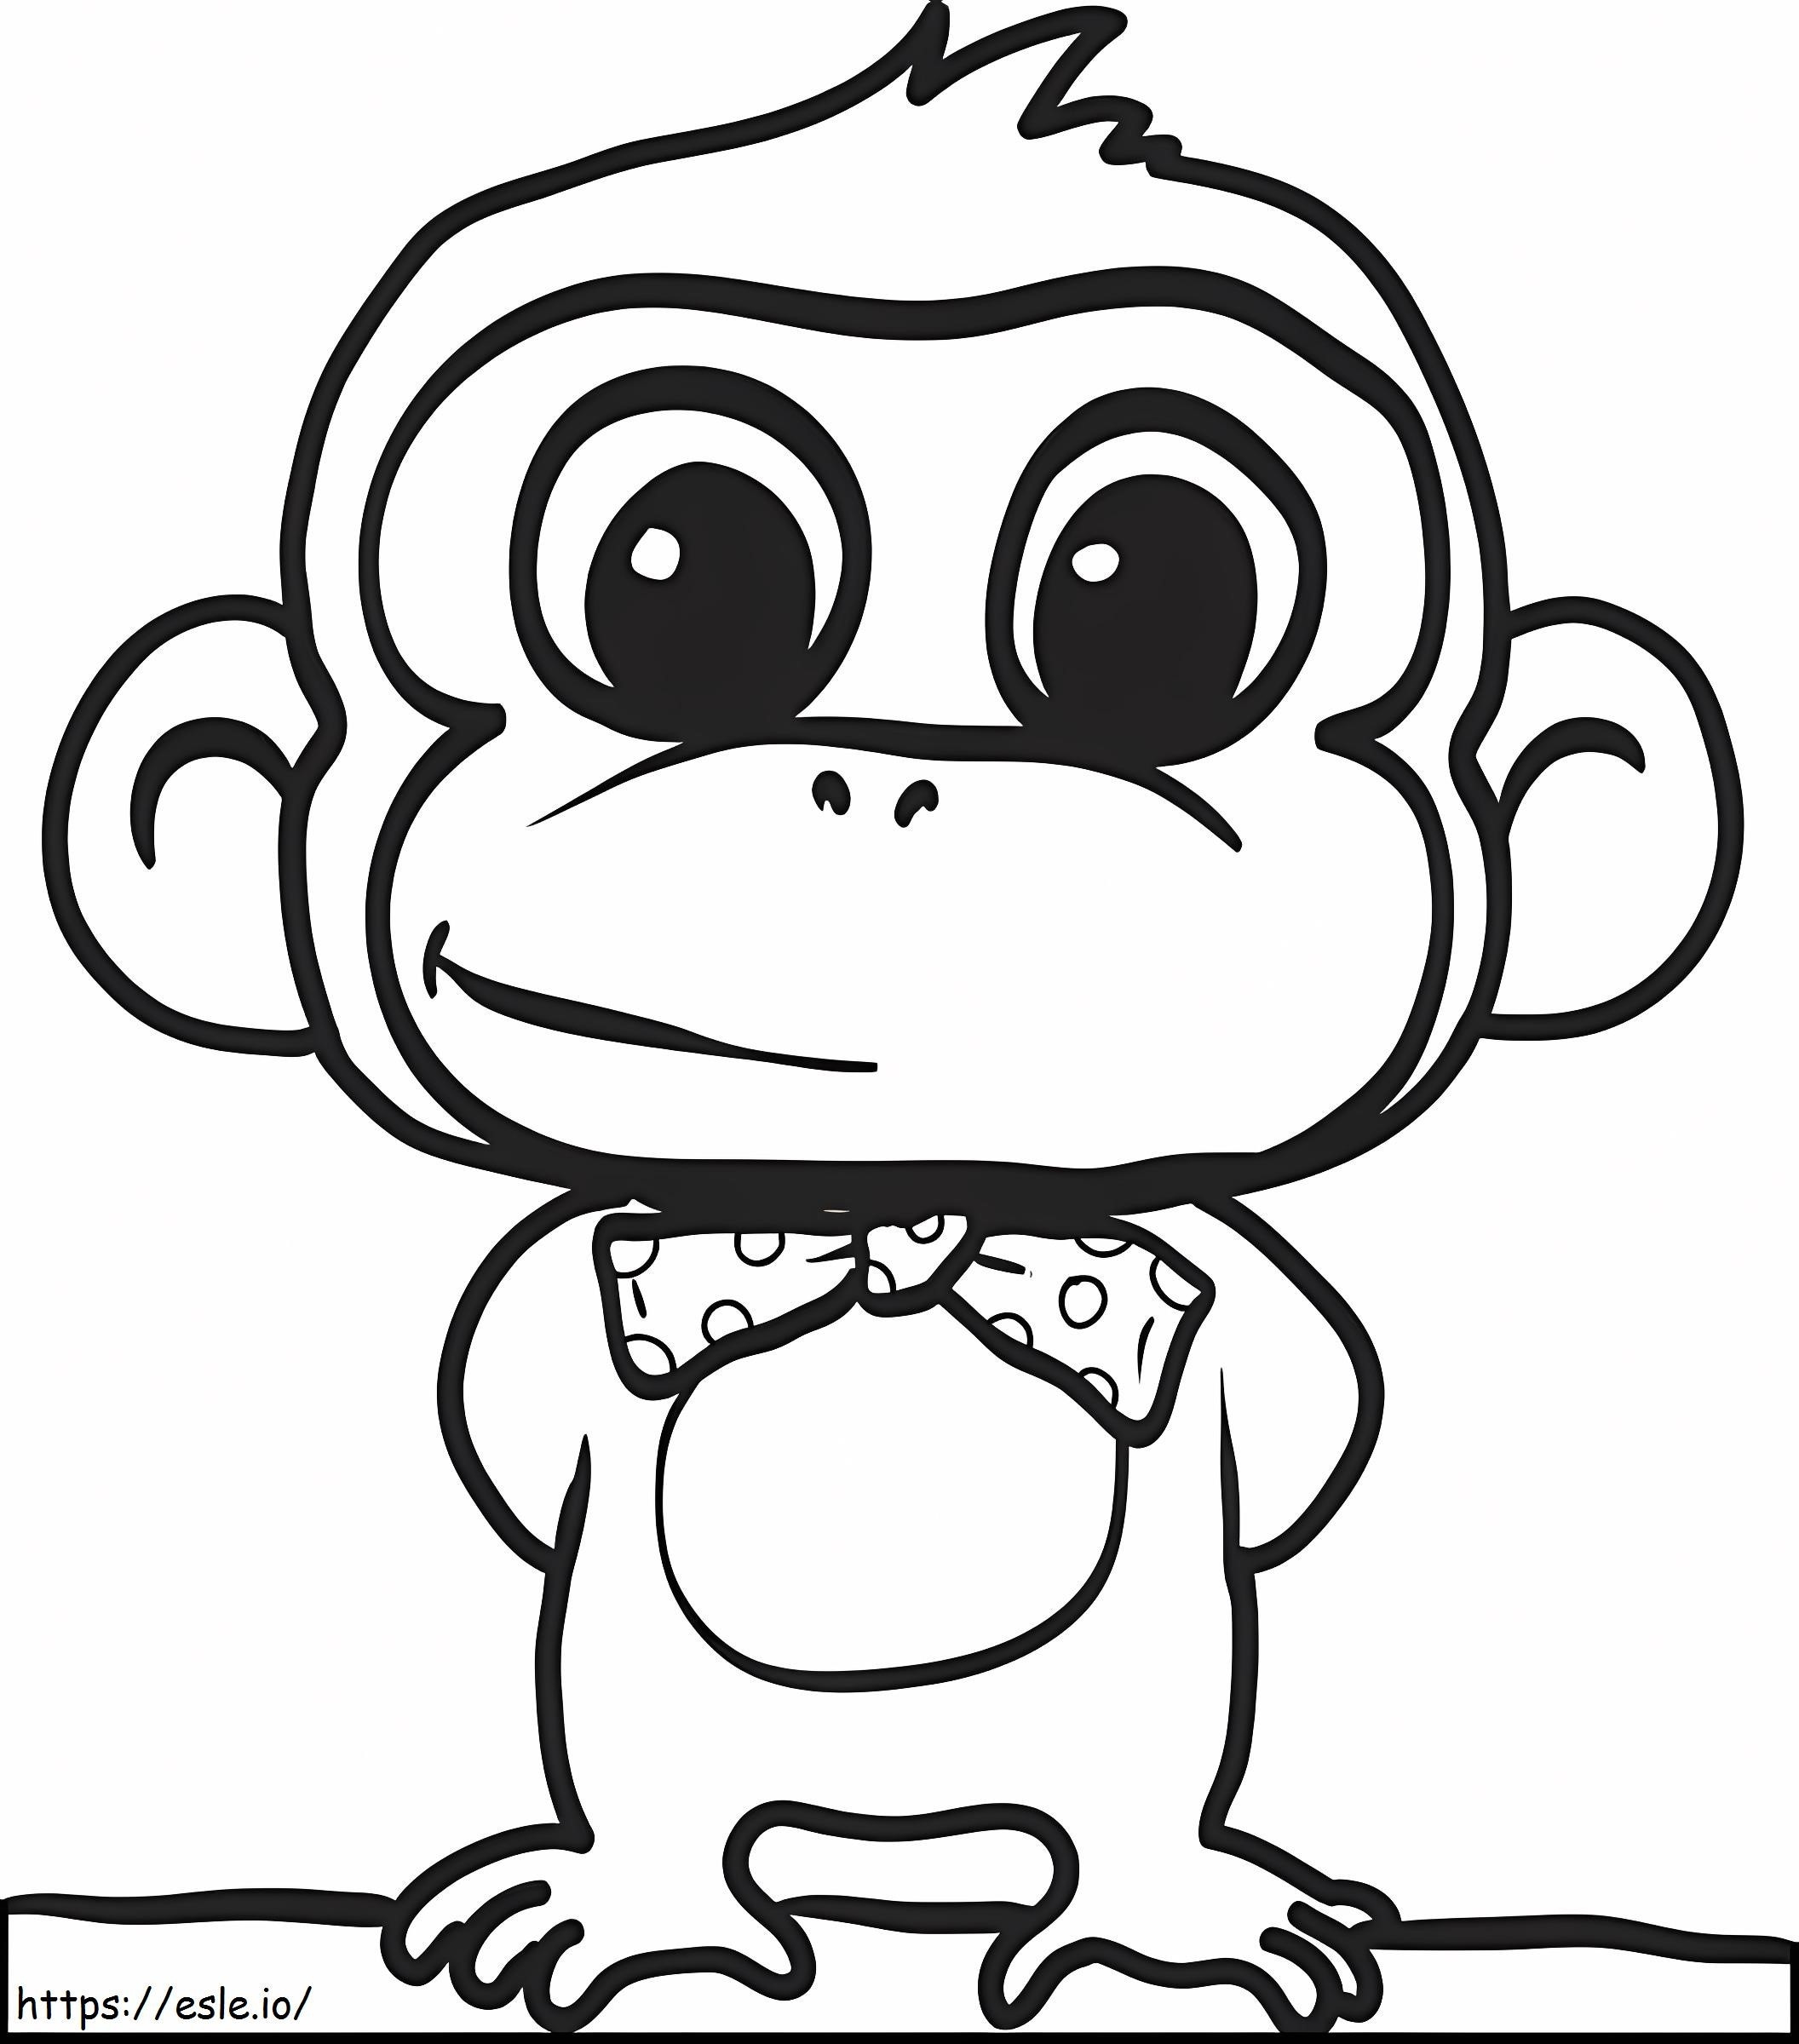 Macaco de Desenho Animado com Laço para colorir